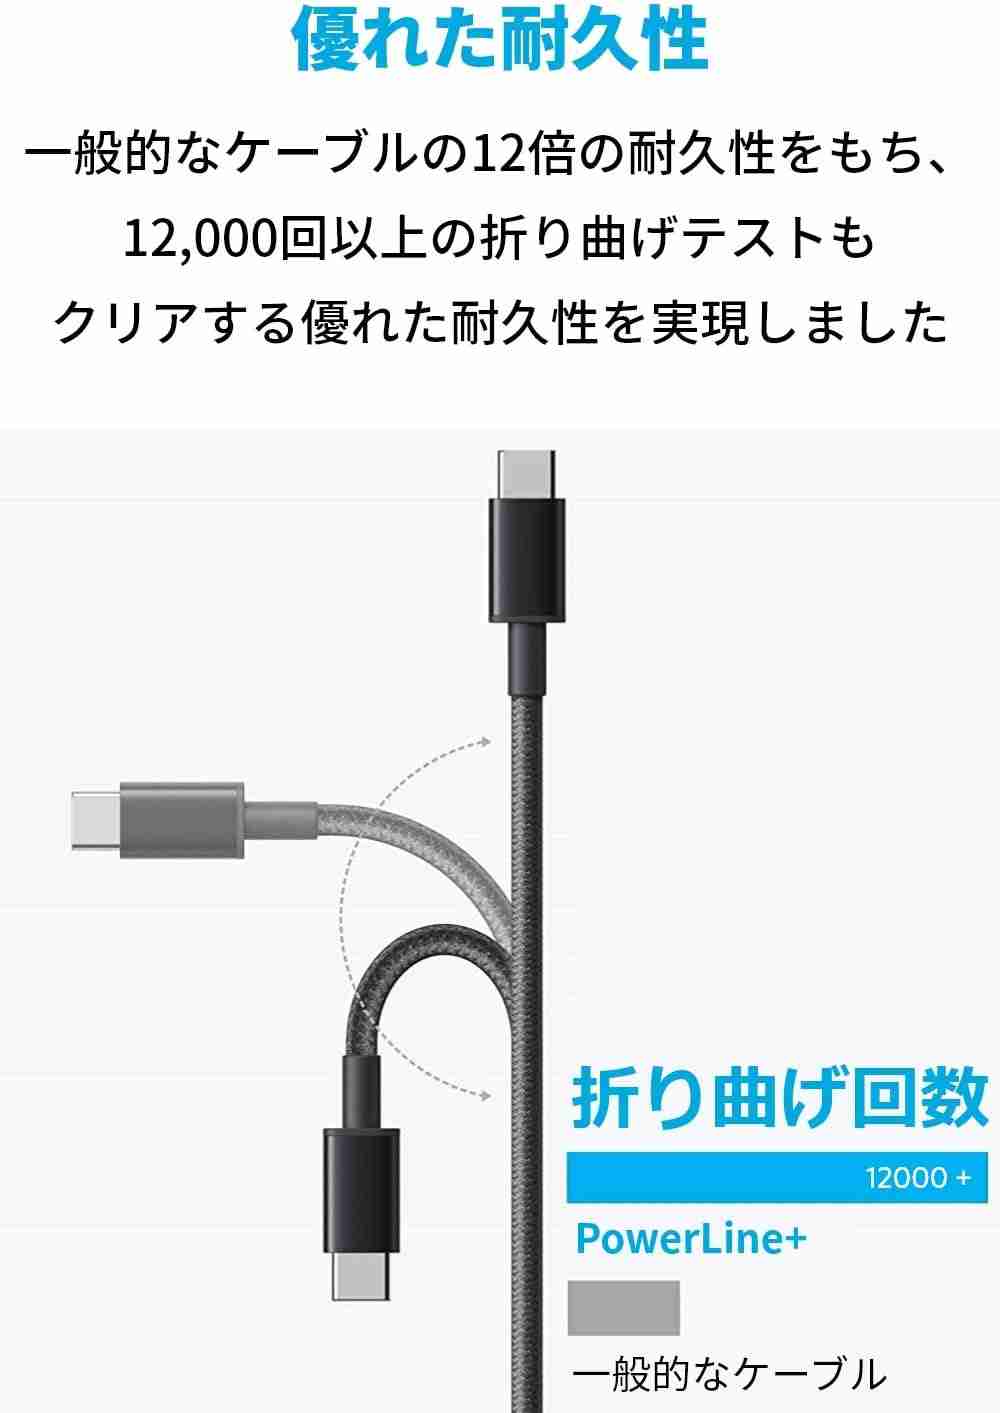 「Anker 高耐久ナイロン USB-C & USB-A ケーブル (USB2.0対応)」は耐久性の高さが魅力